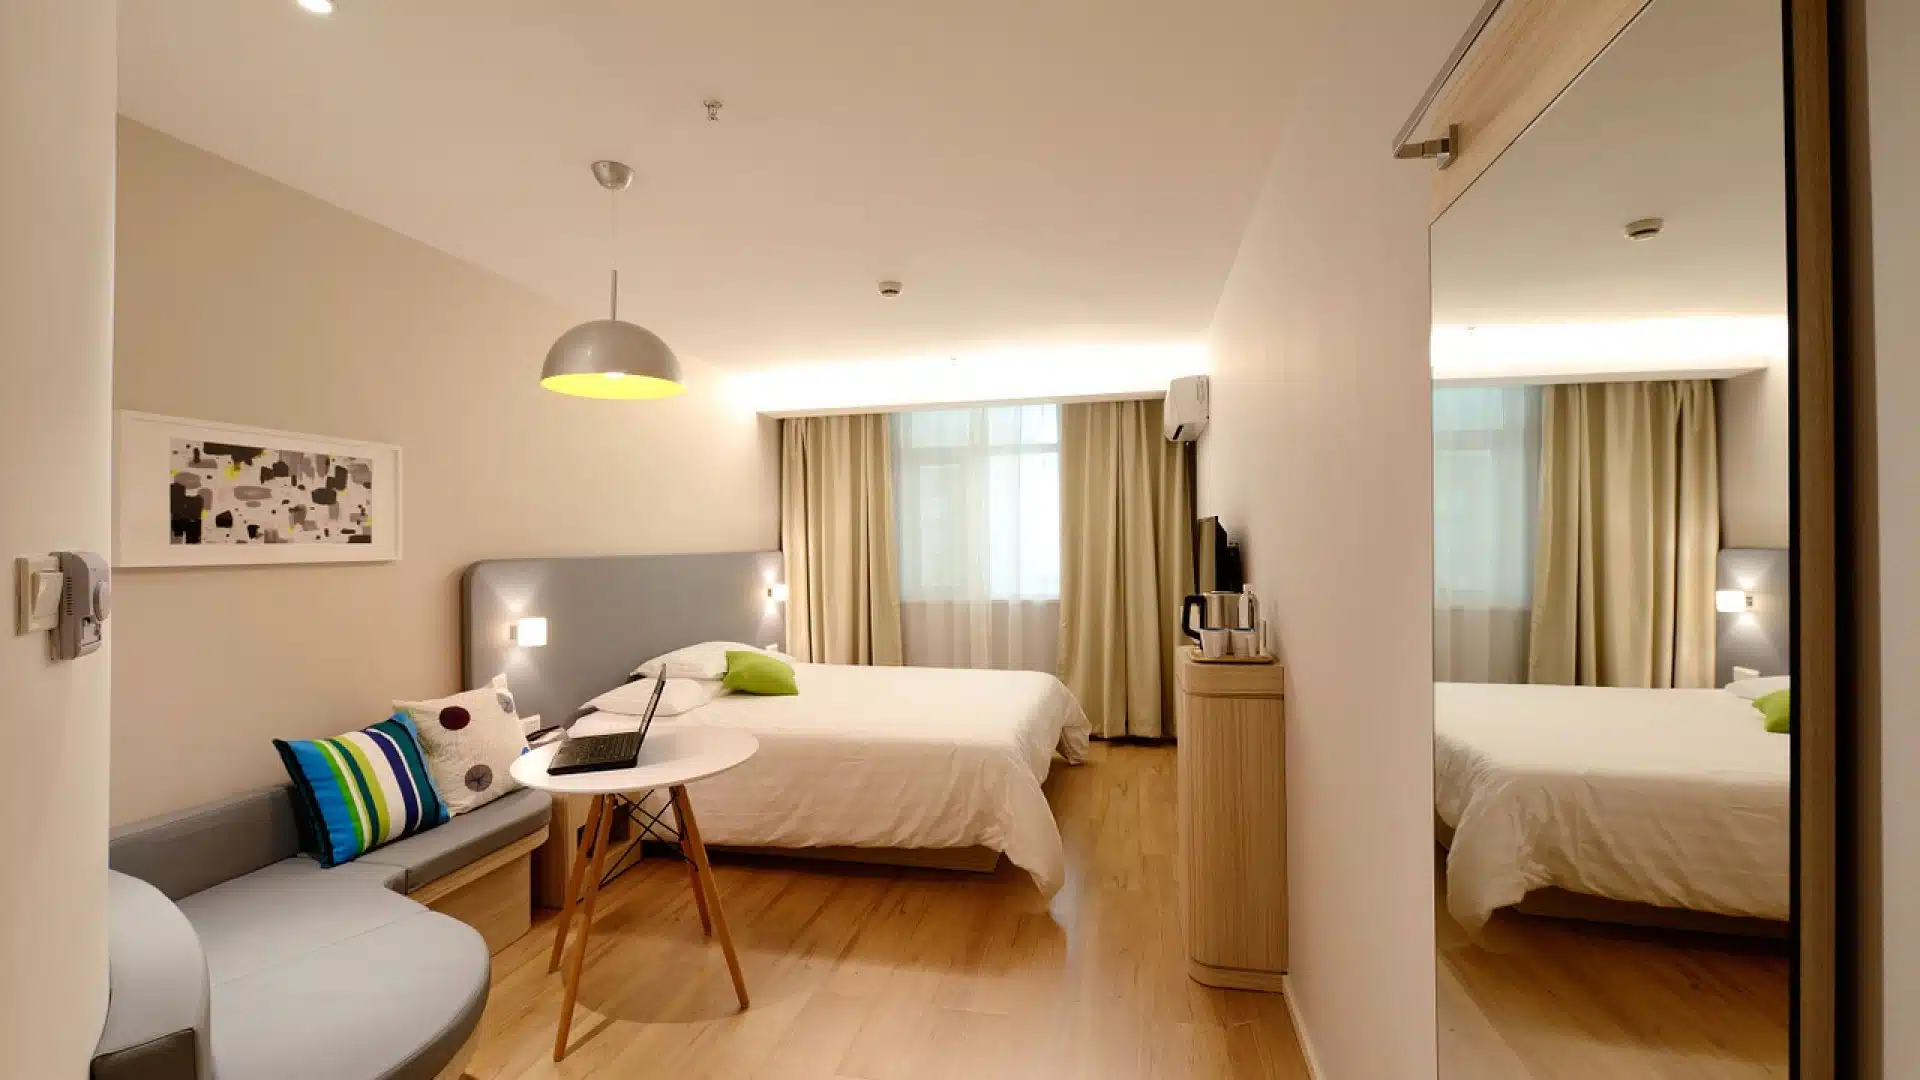 Eradiquez les punaises de lit dans votre hôtel grâce à l’intervention d’un expert